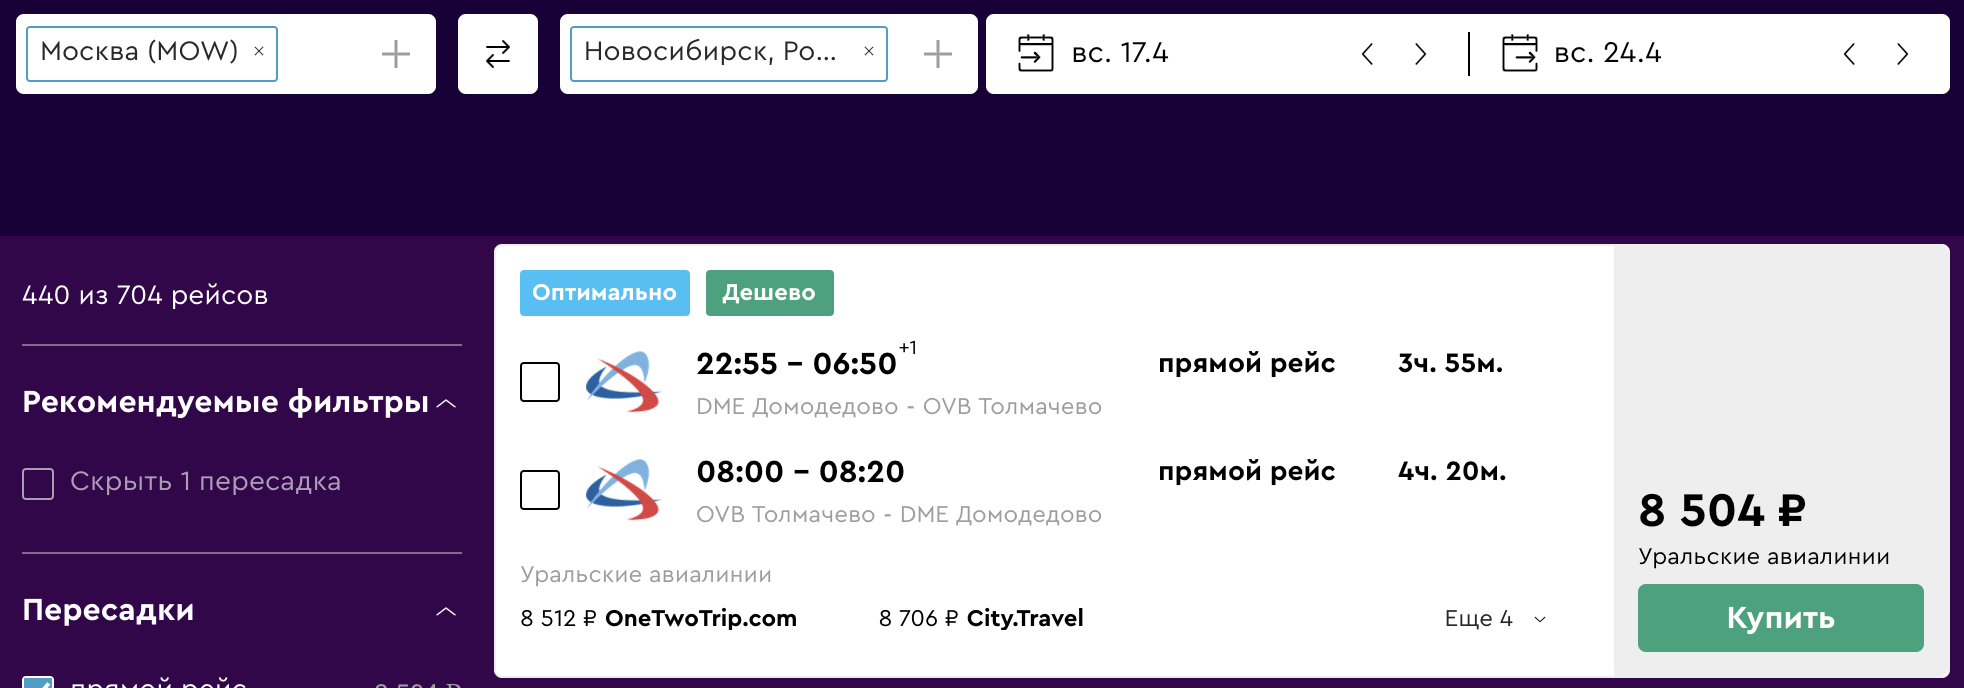 Ural Airlines: дешевые билеты из Москвы в Омск за 5999₽, Барнаул 7000₽, Новосибирск за 8500₽ туда-обратно